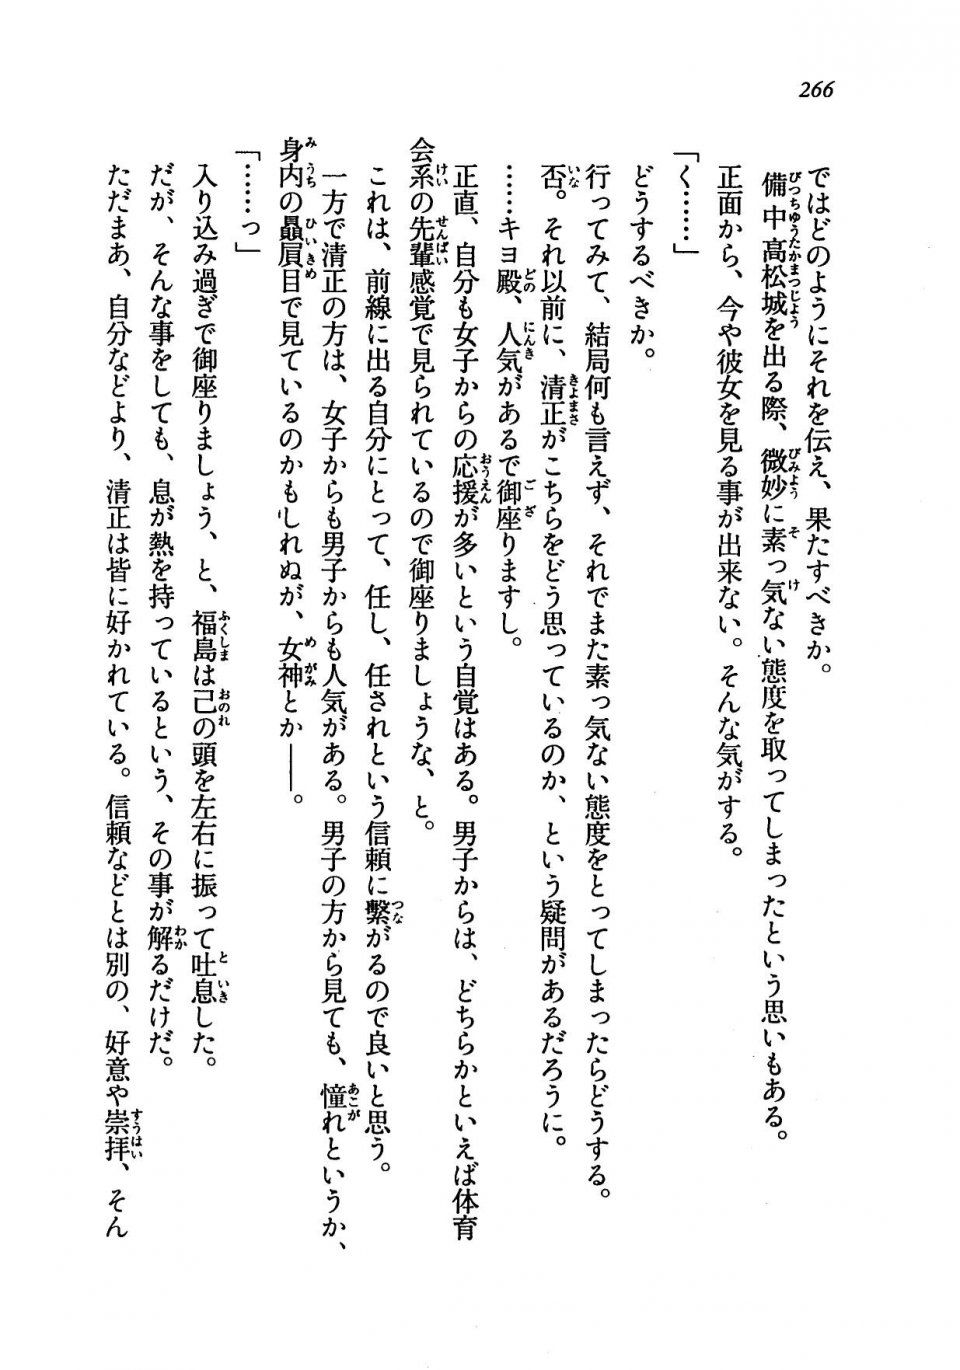 Kyoukai Senjou no Horizon LN Vol 19(8A) - Photo #266